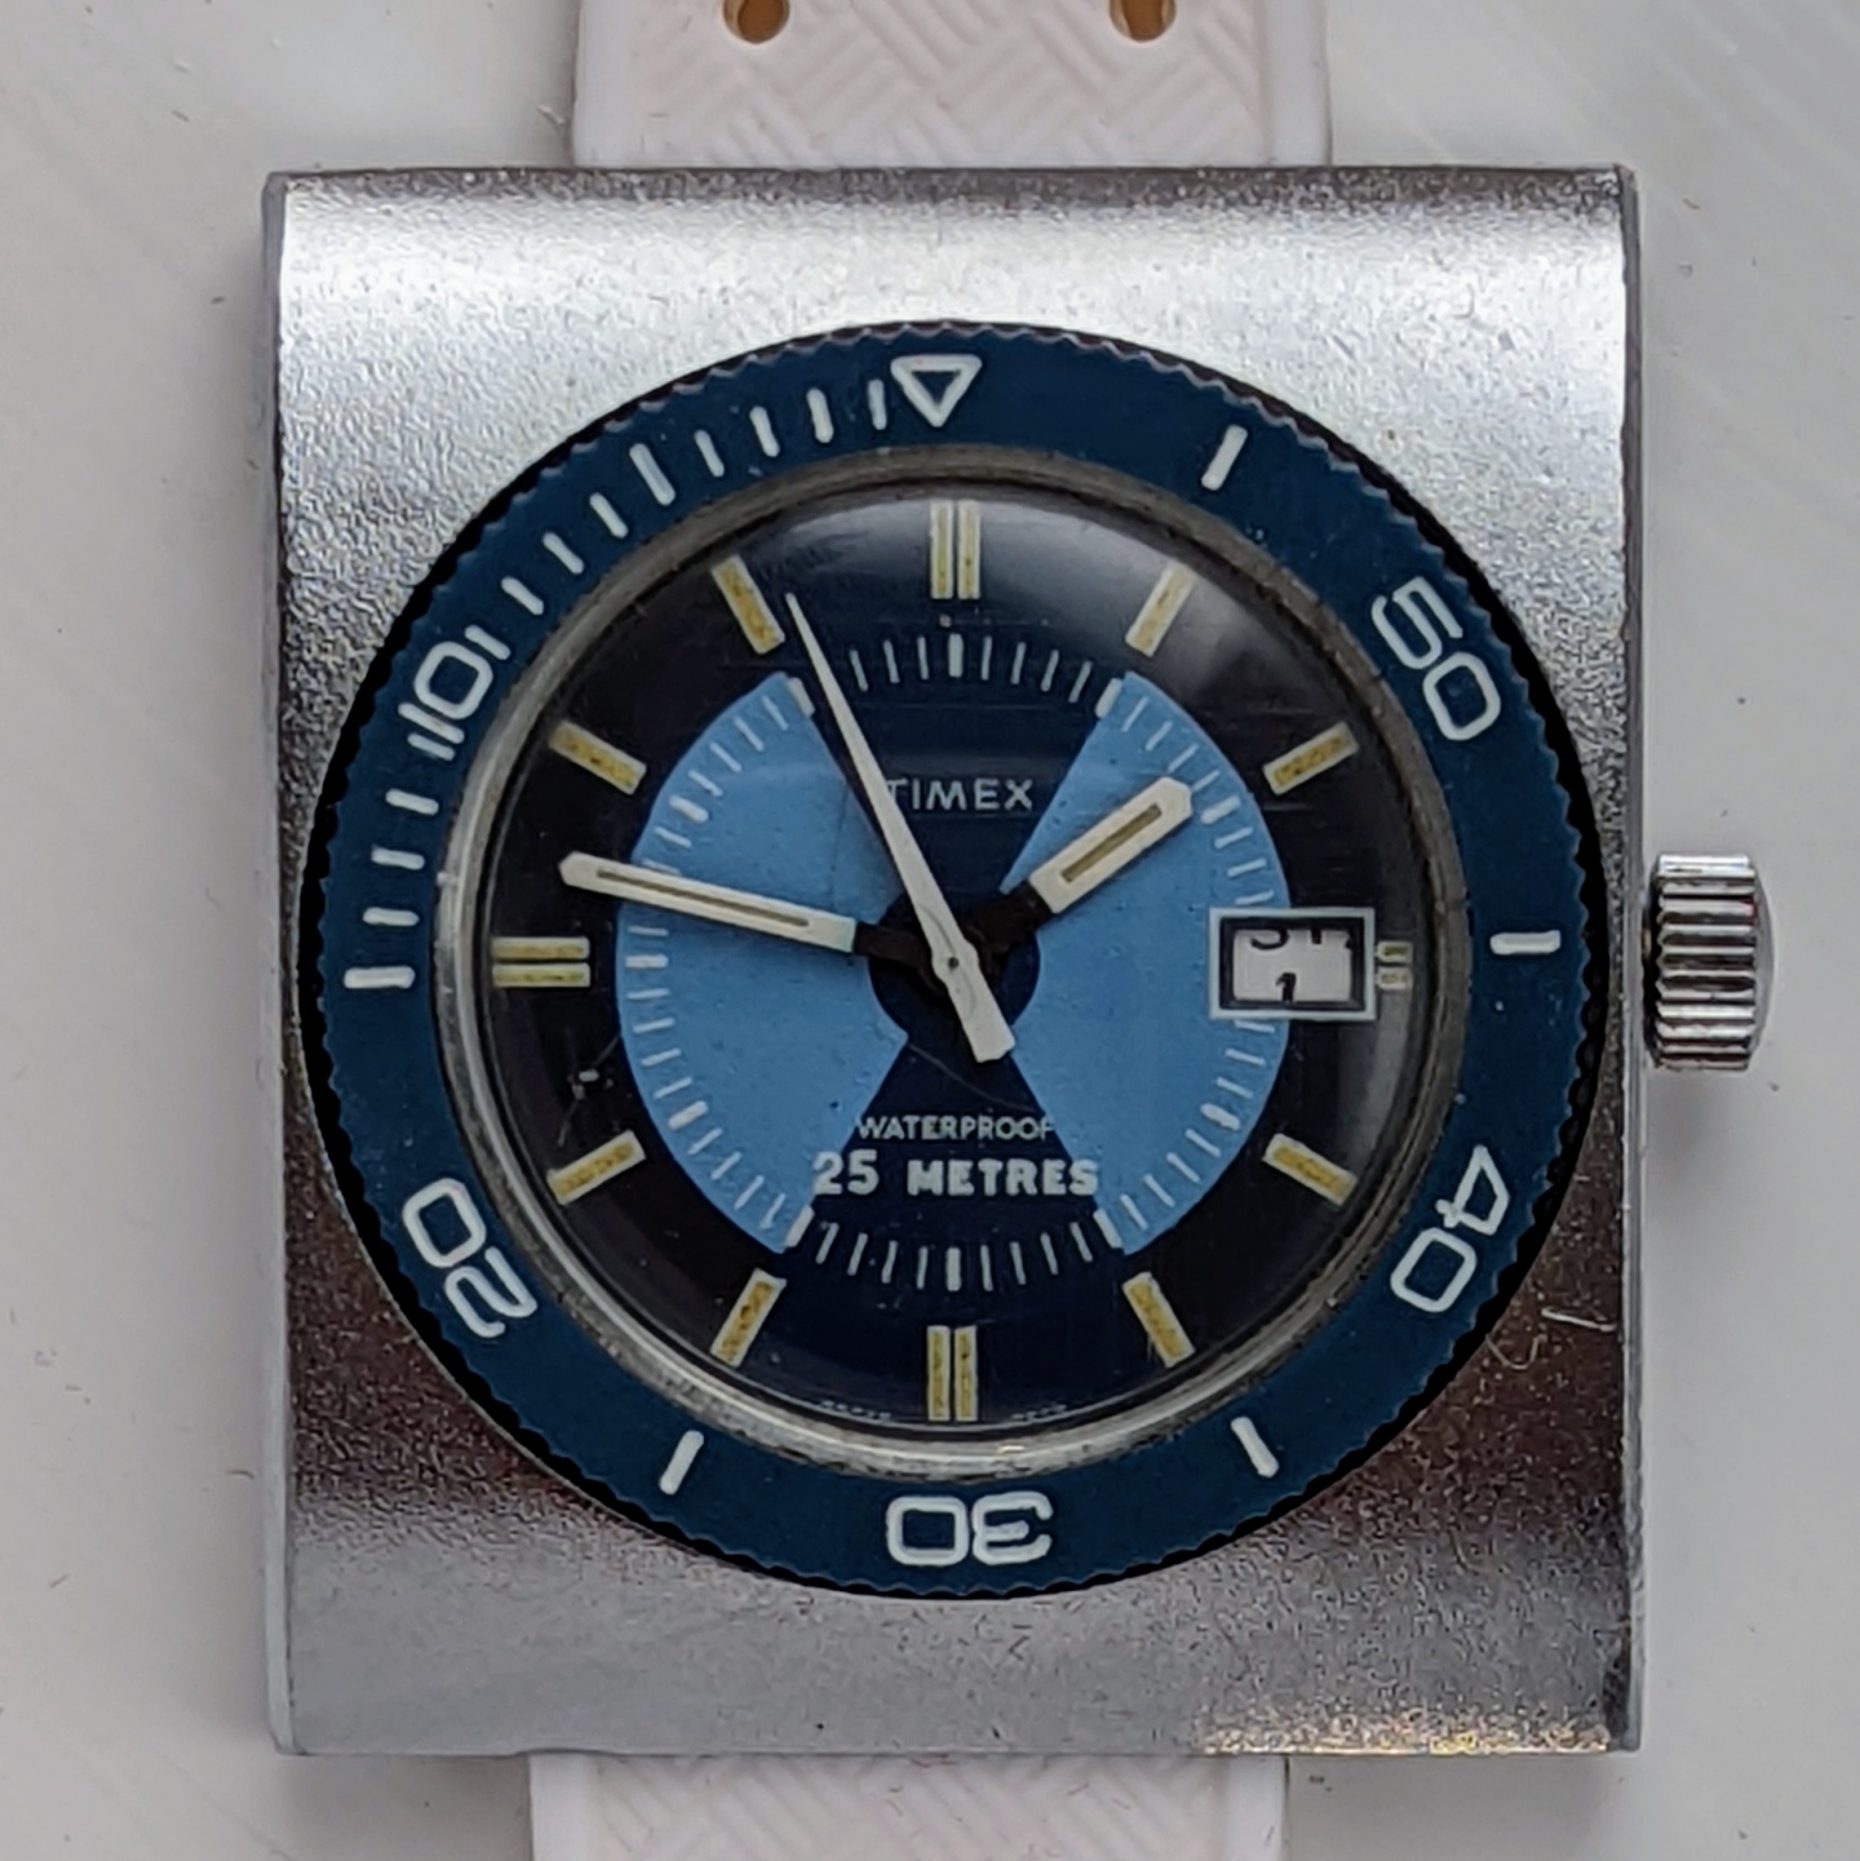 Timex Dive Watch 1972 Marlin Ref. 2277 2572